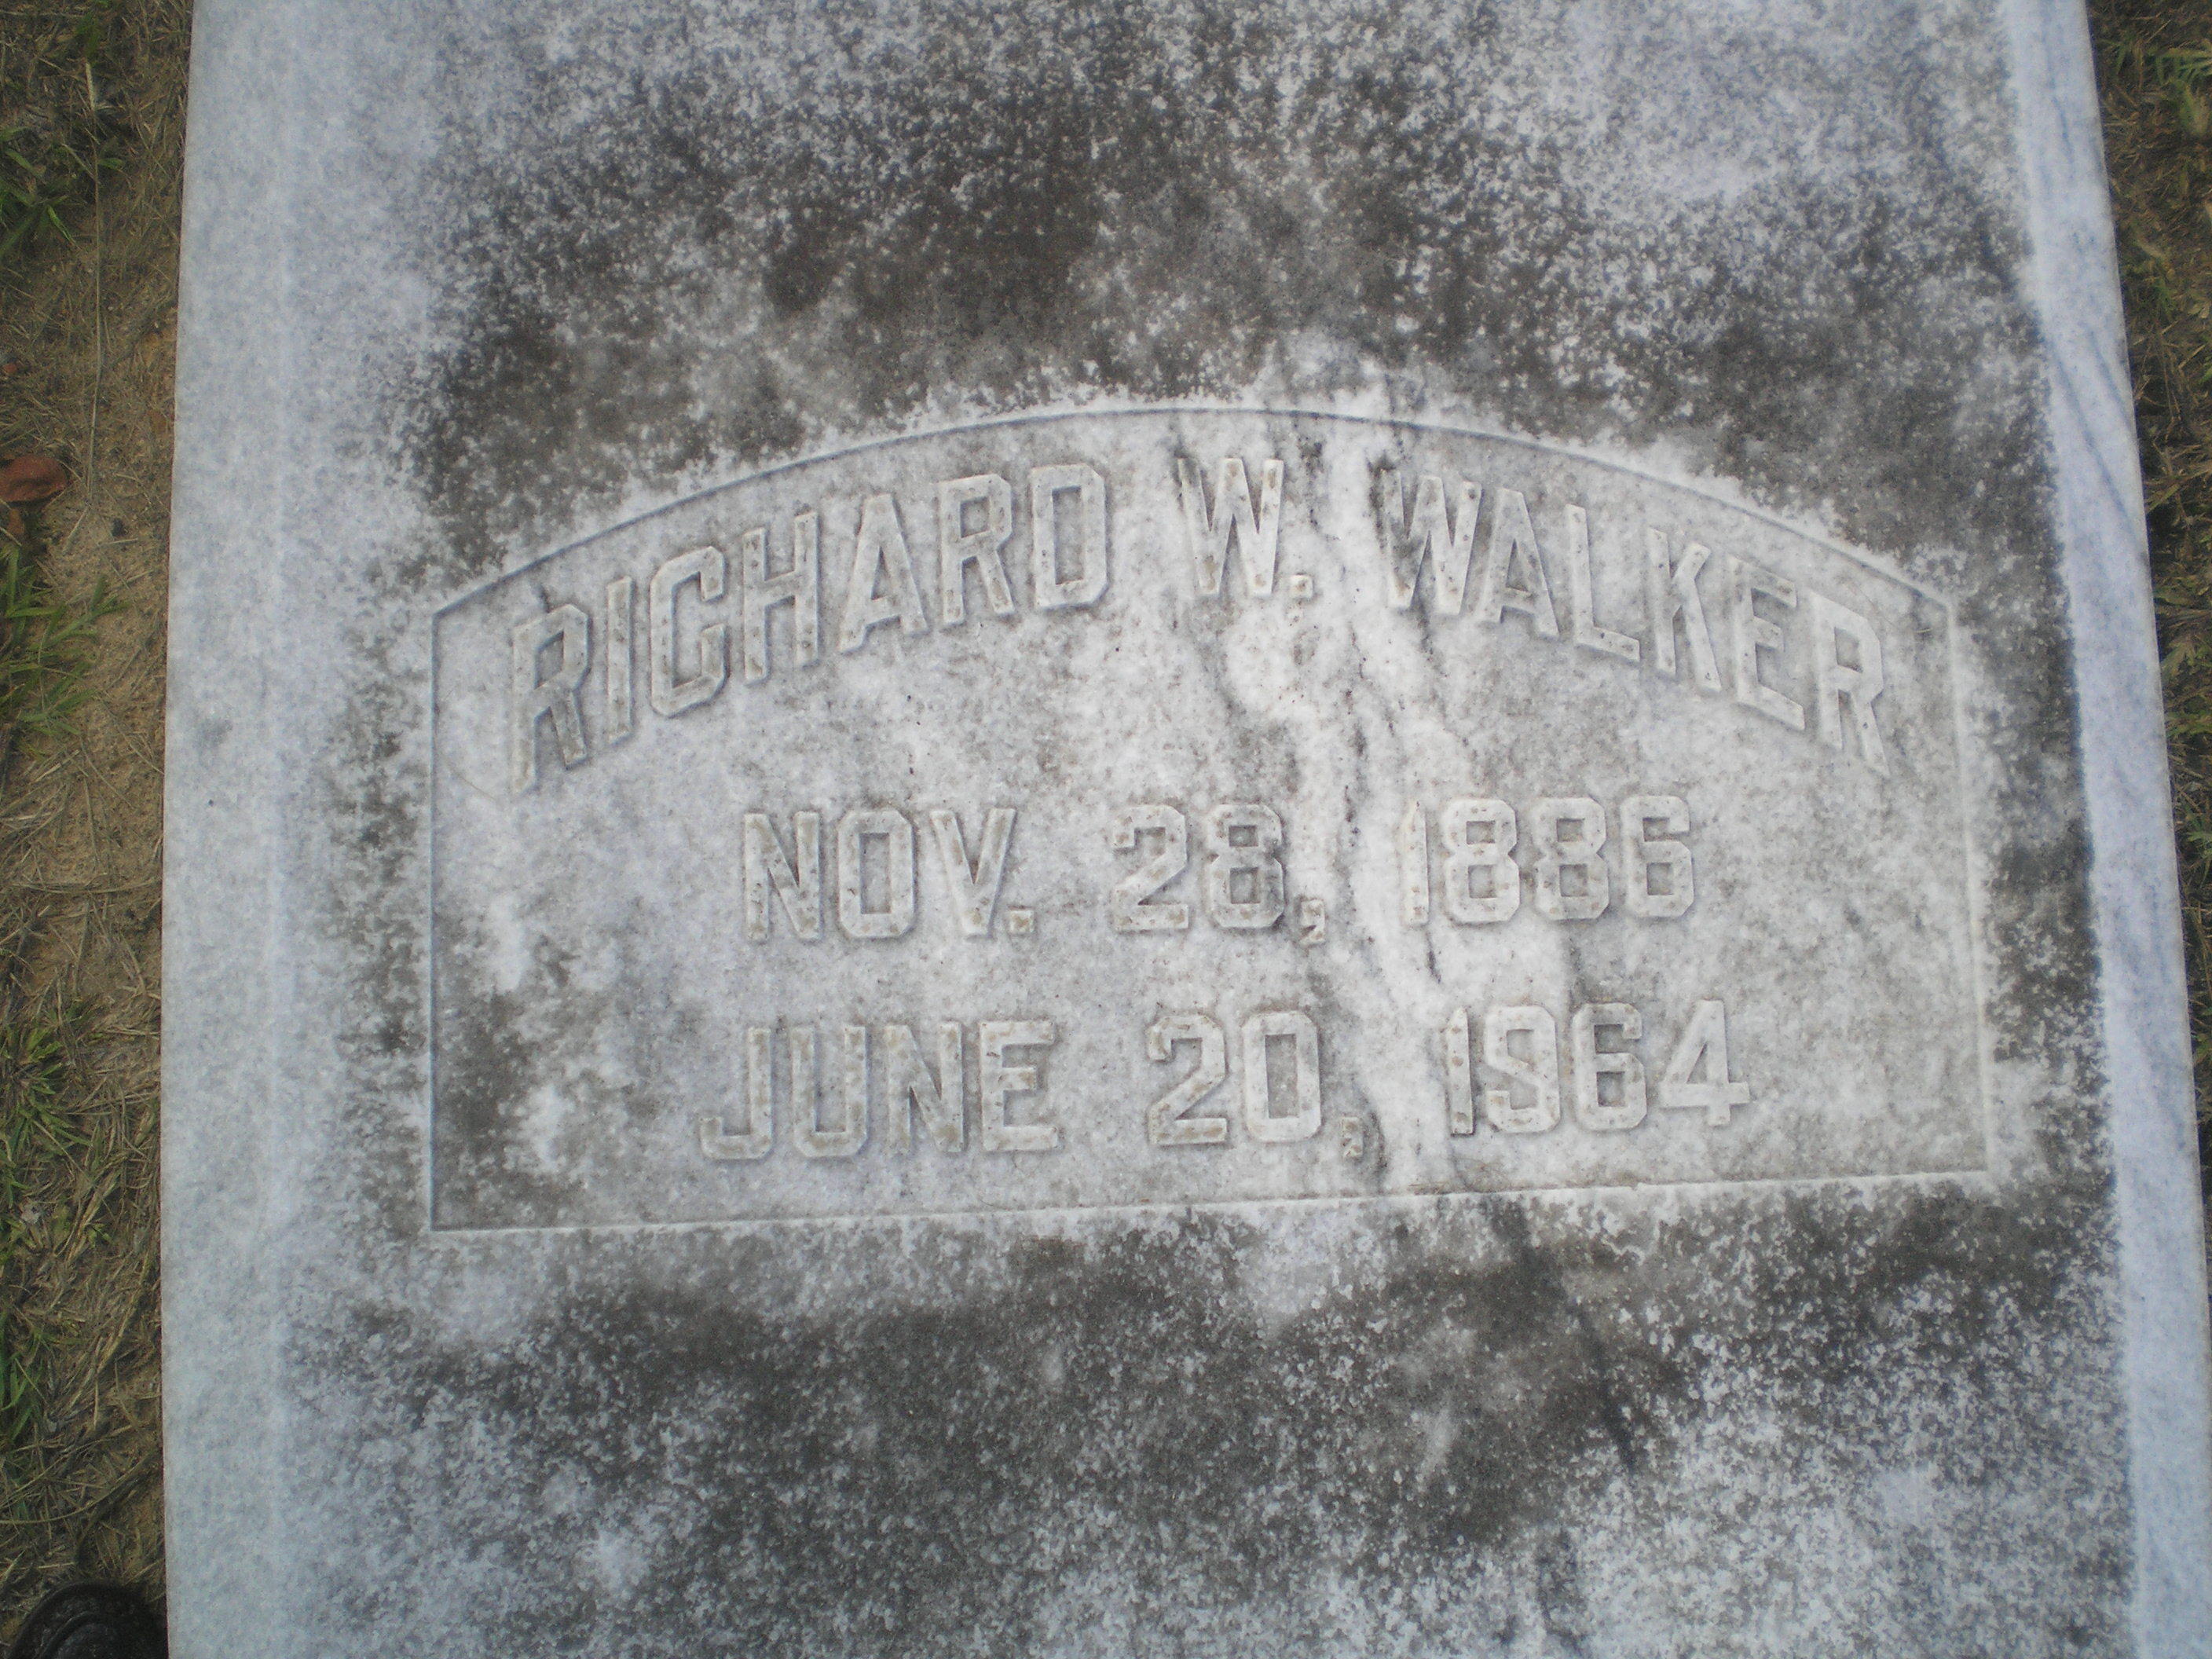 Richard W. Walker Nov. 28, 1886 June 20, 1964